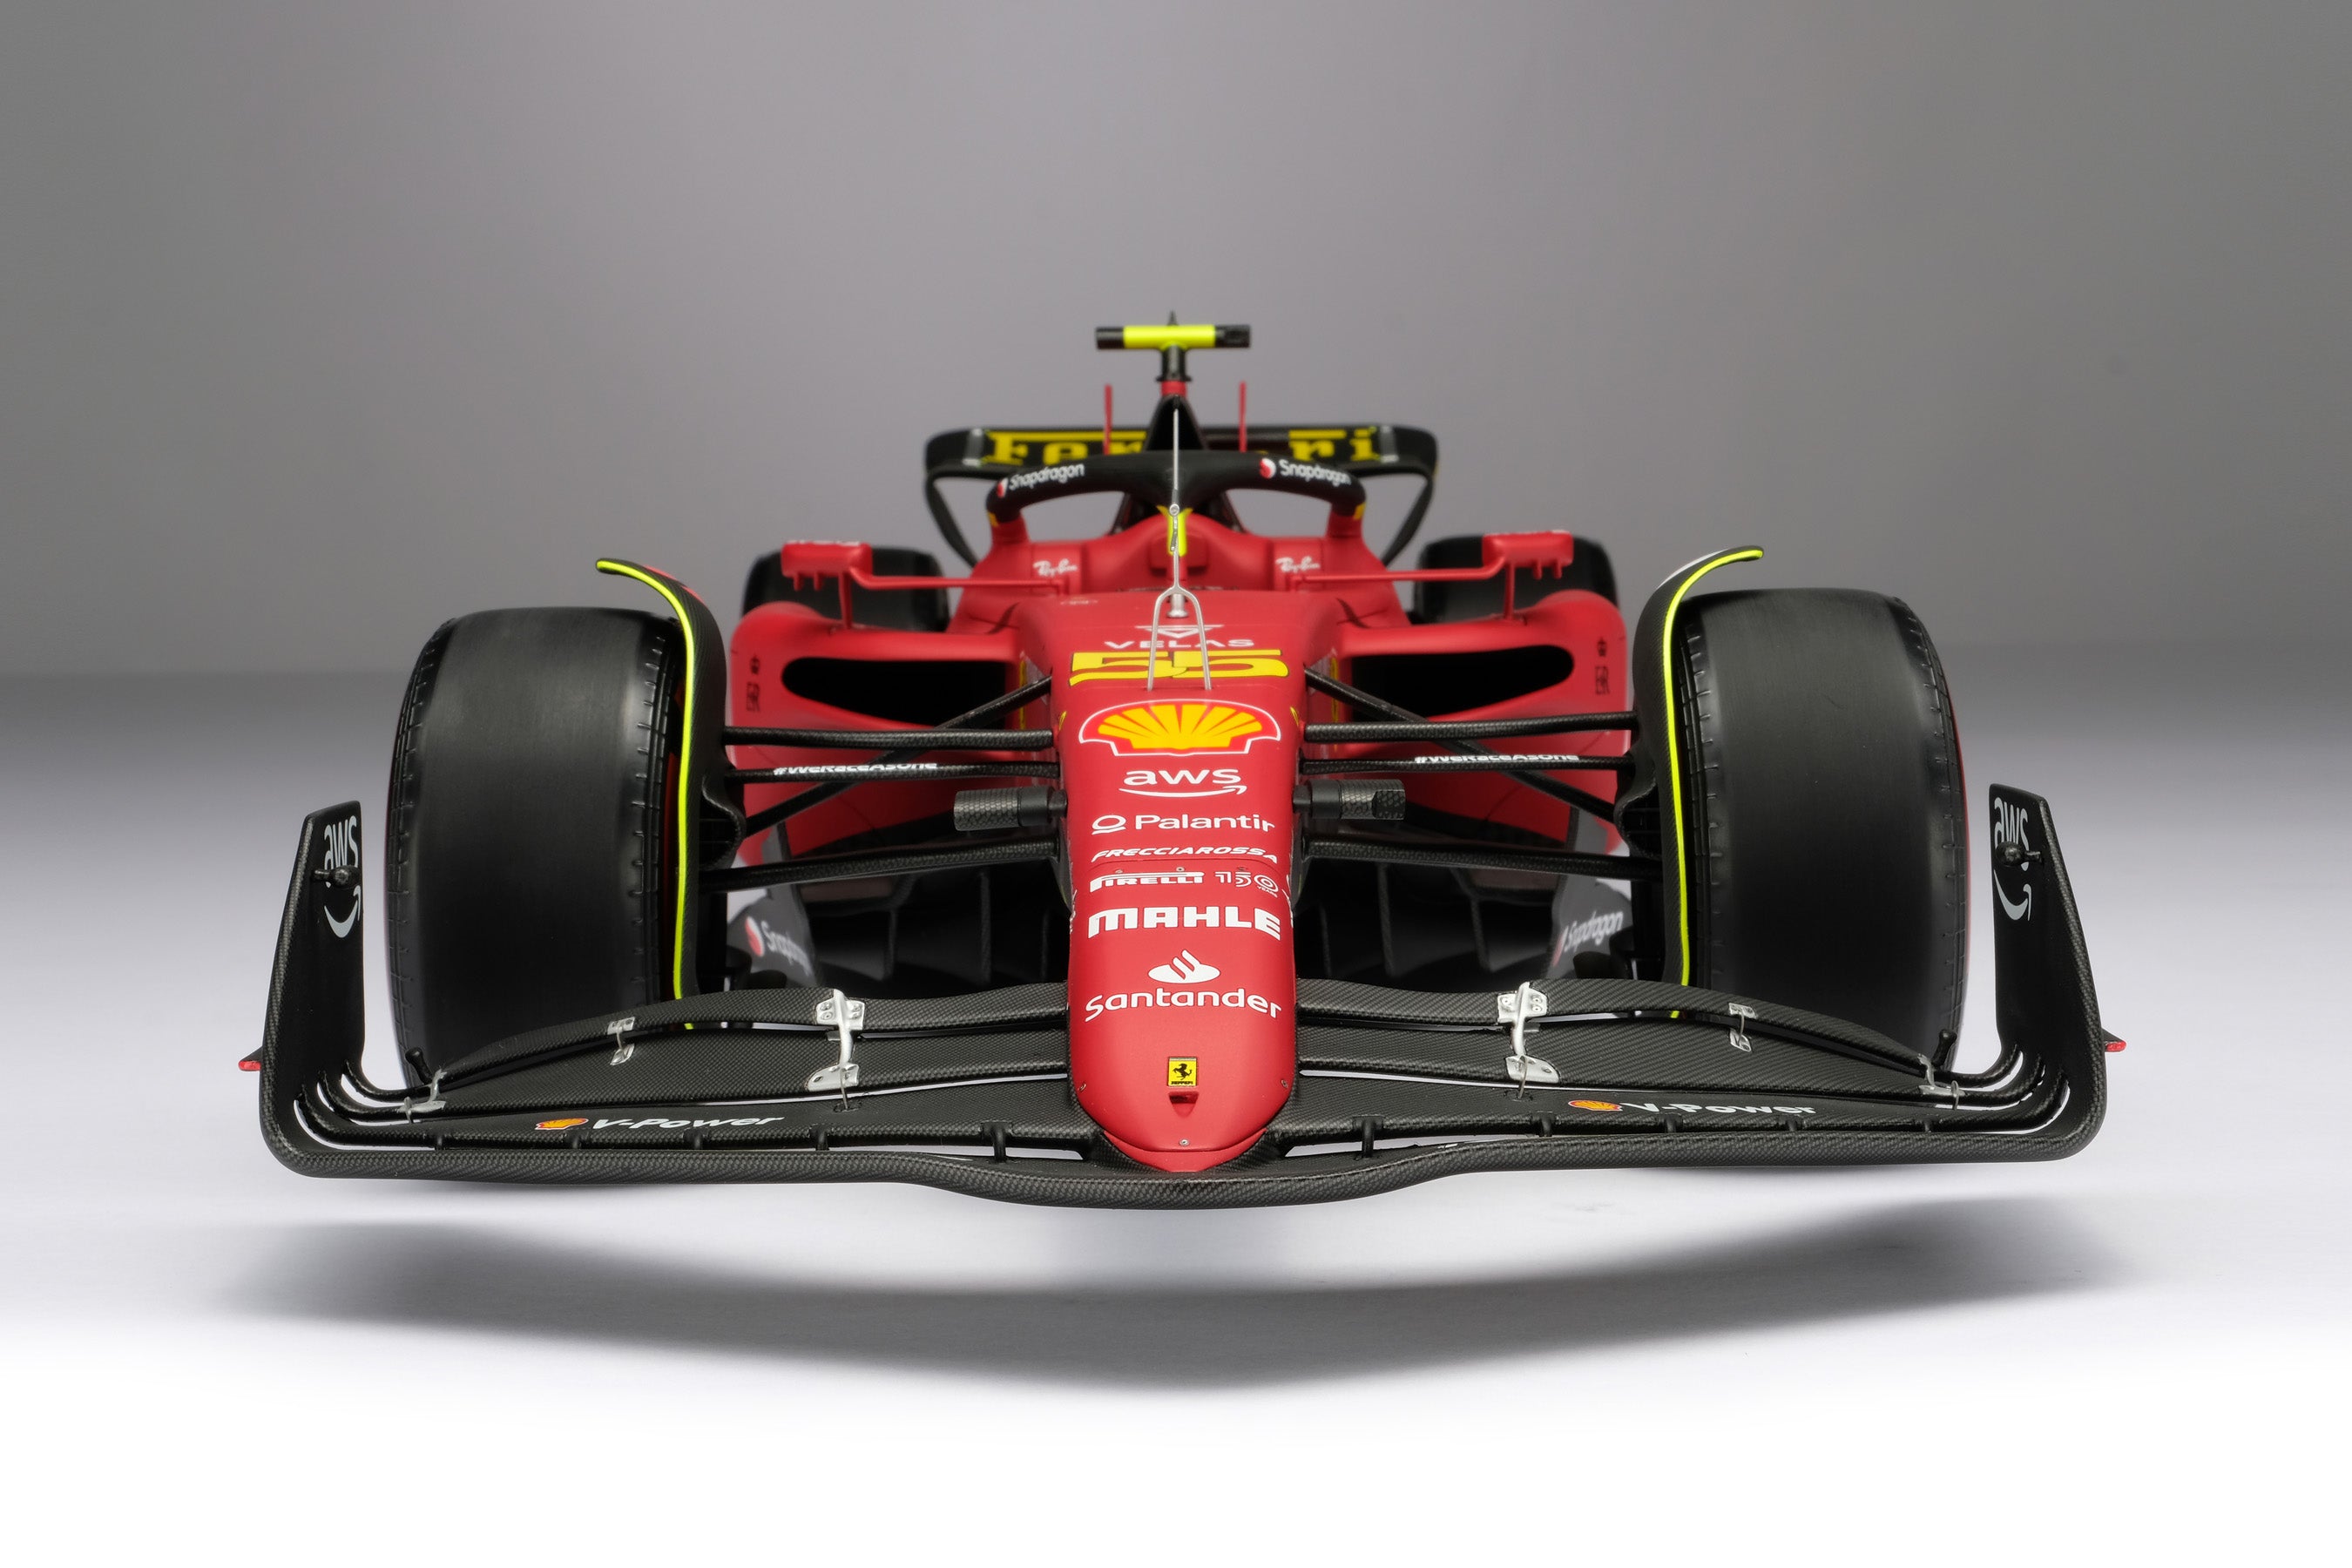 Amalgam launches Ferrari F1-75 at 1:18 scale – Amalgam Collection